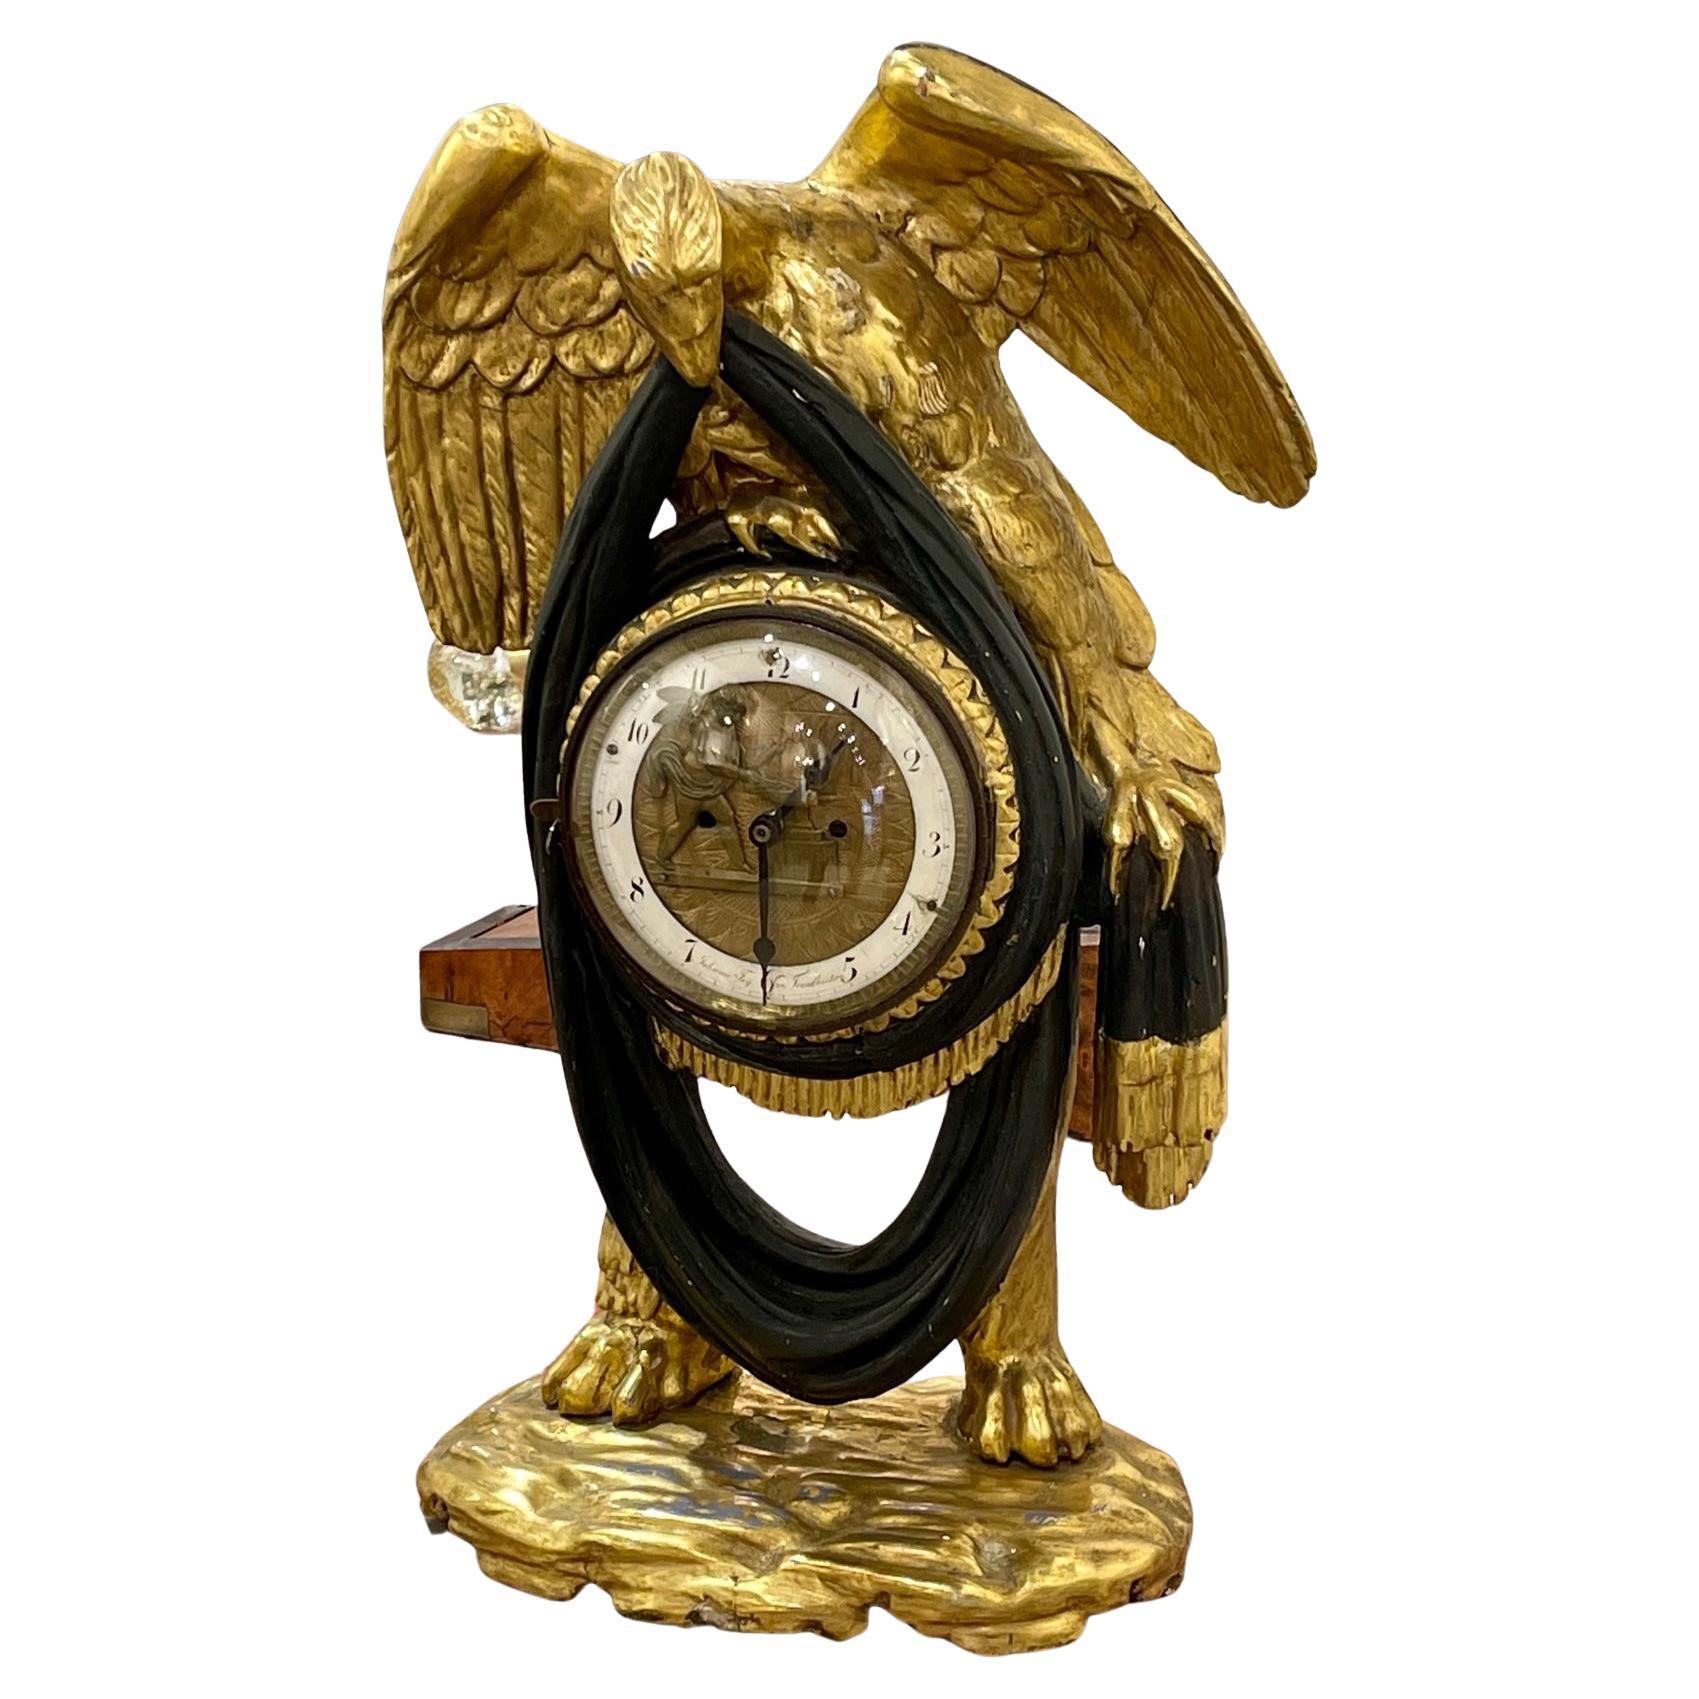 Pendule de cheminée suédoise du 19ème siècle en forme d'aigle sculptée et dorée à la feuille